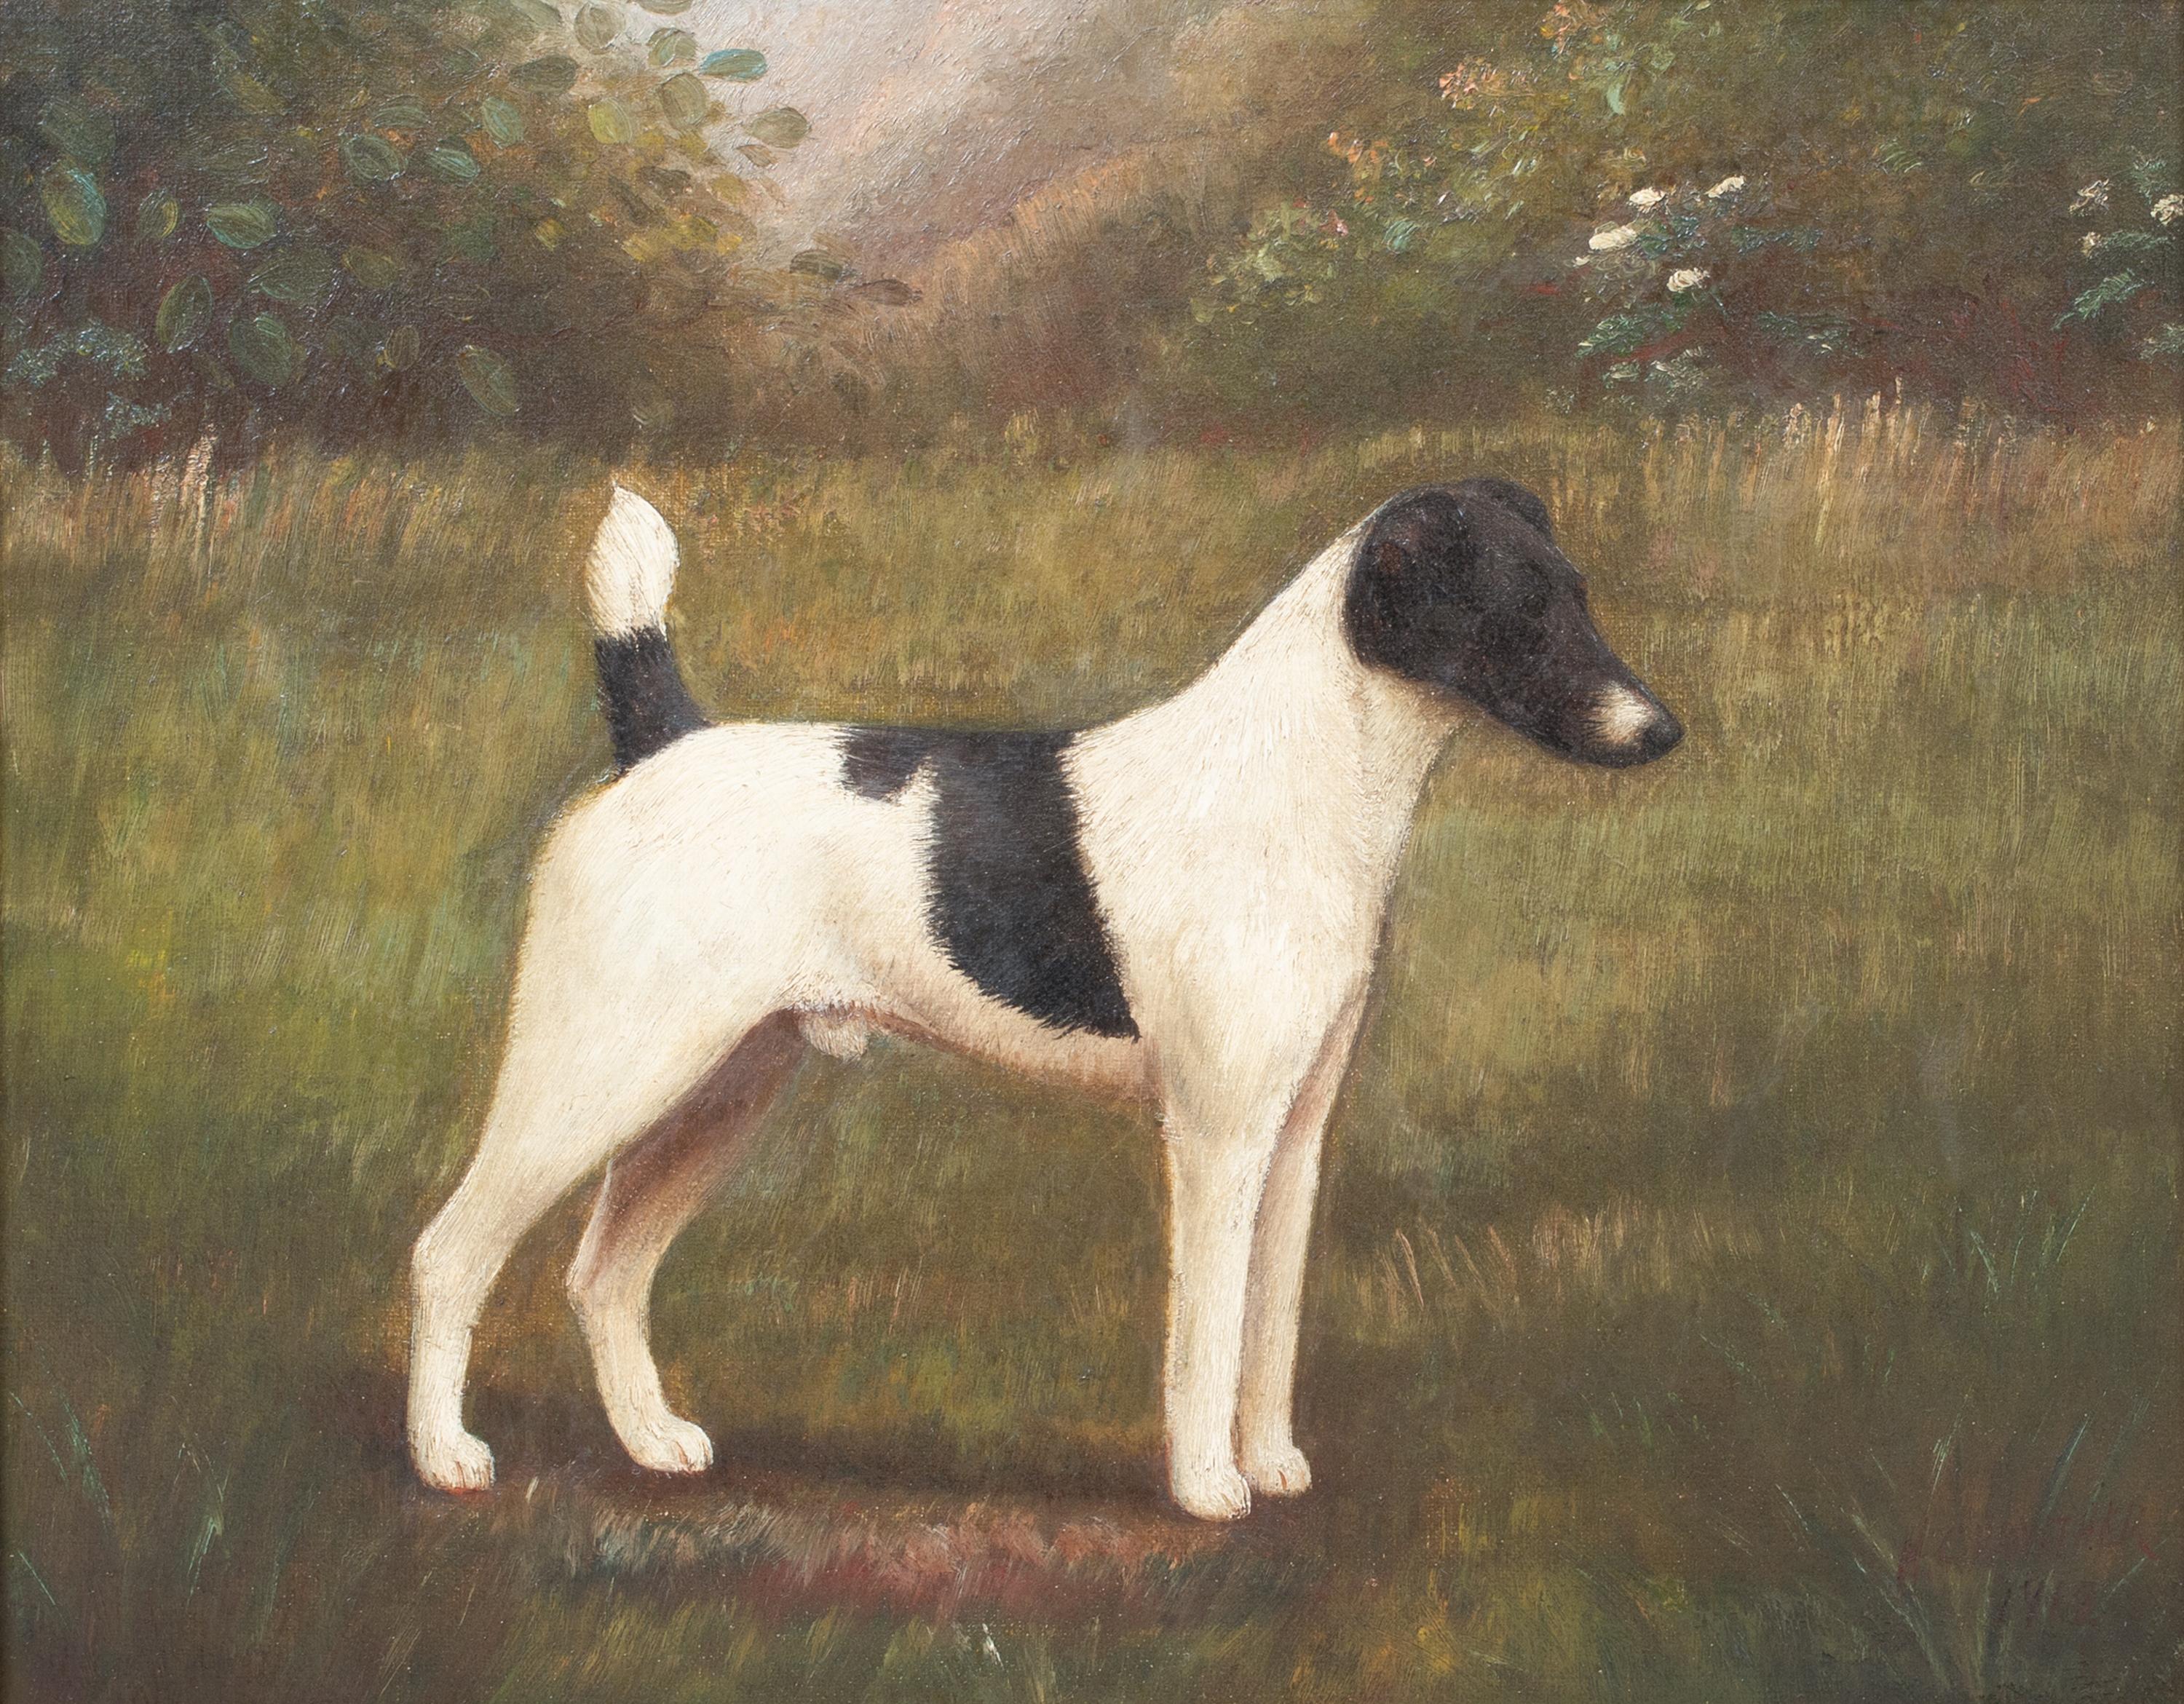 
Porträt eines schwarz-weißen Jack Russell Terriers, 19. Jahrhundert 

von Henry CROWTHER - Hundemaler des 19. Jahrhunderts

Englisches Porträt eines schwarz-weißen Jack Russell Terriers aus dem 19. Jahrhundert, Öl auf Leinwand von Henry Crowther.